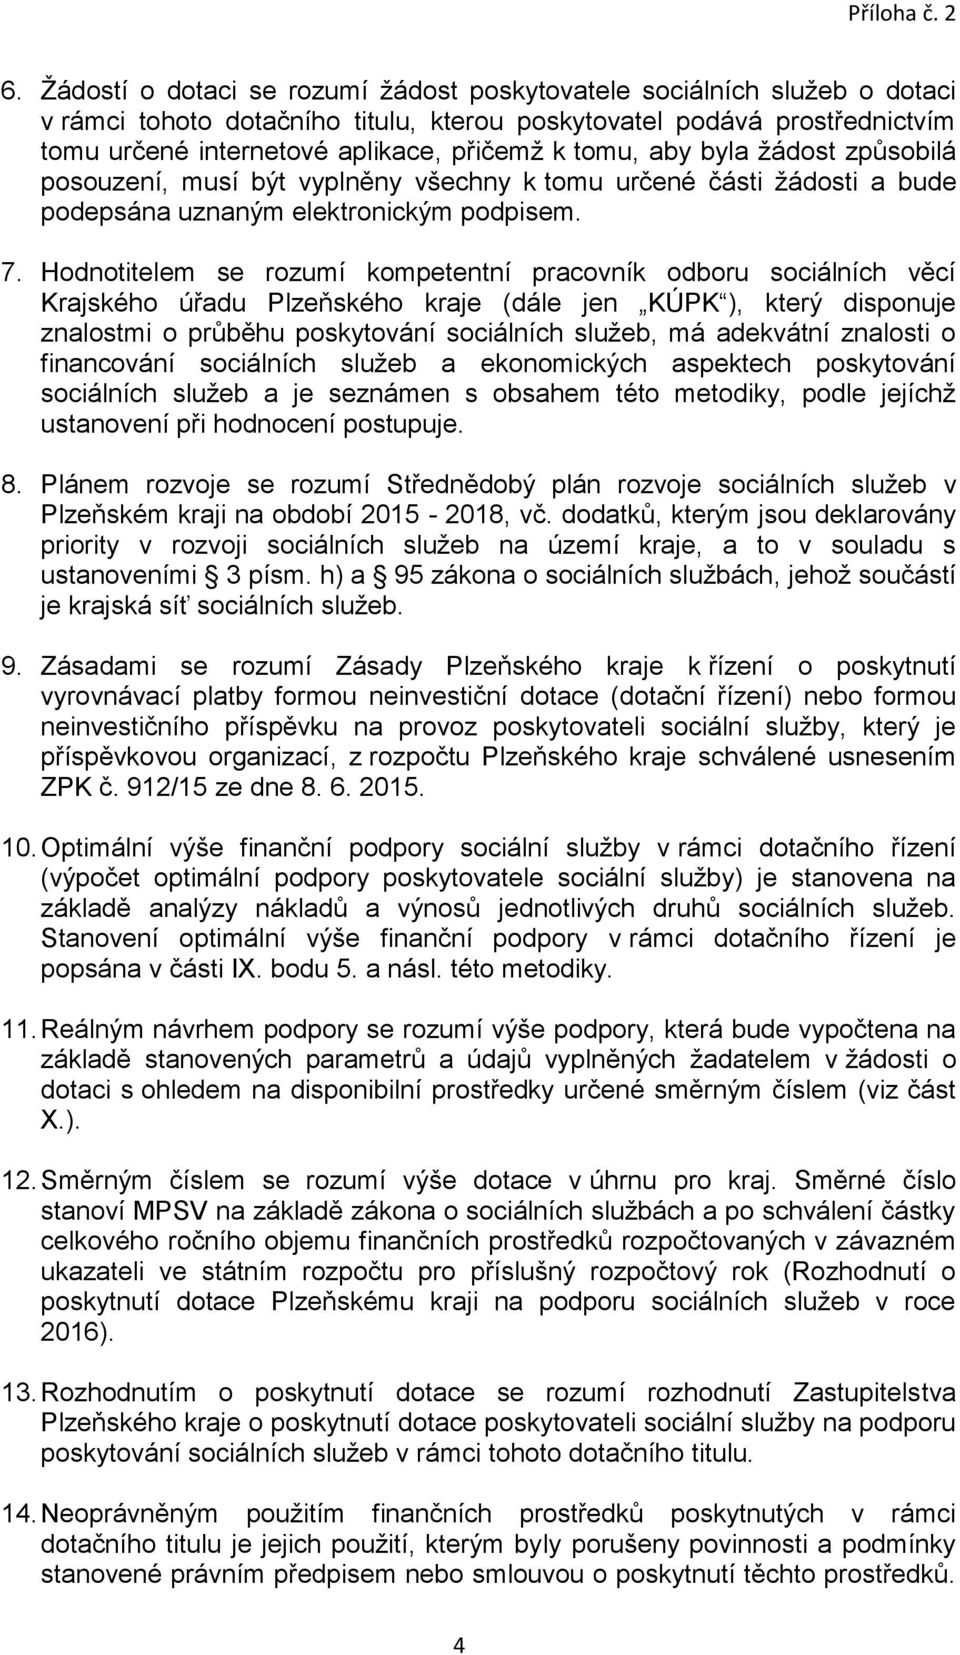 Hodnotitelem se rozumí kompetentní pracovník odboru sociálních věcí Krajského úřadu Plzeňského kraje (dále jen KÚPK ), který disponuje znalostmi o průběhu poskytování sociálních služeb, má adekvátní